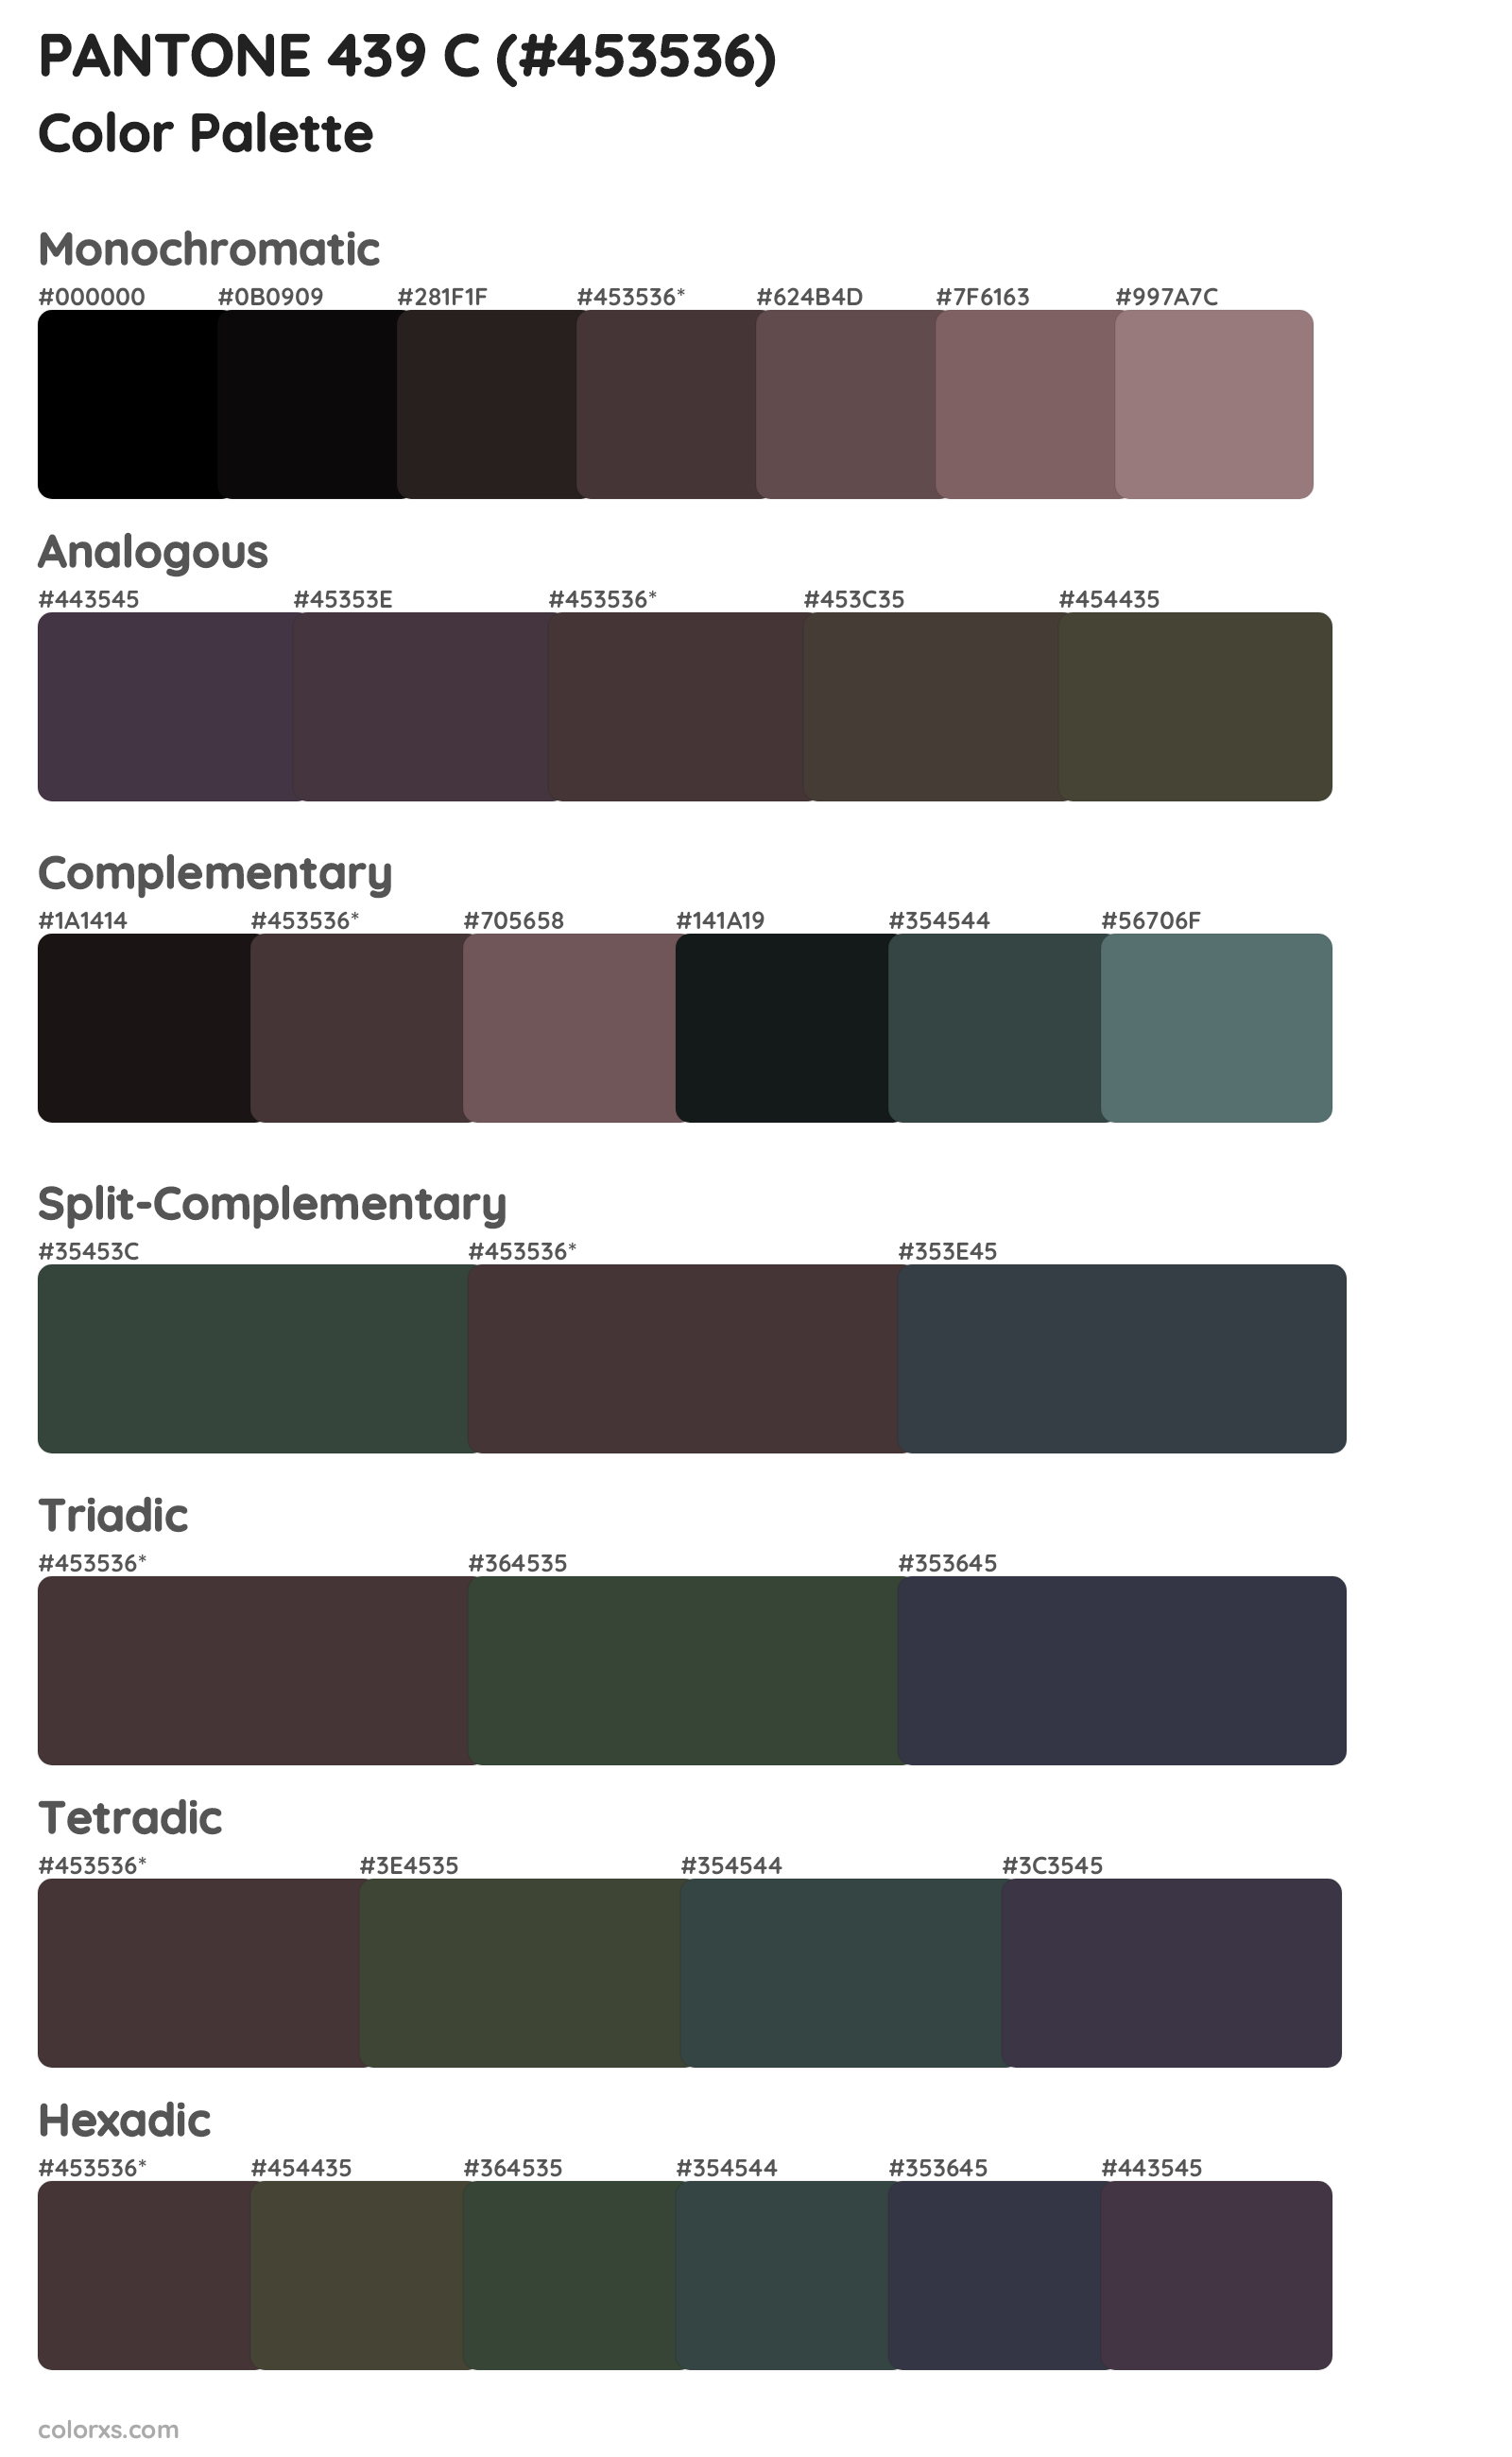 PANTONE 439 C Color Scheme Palettes